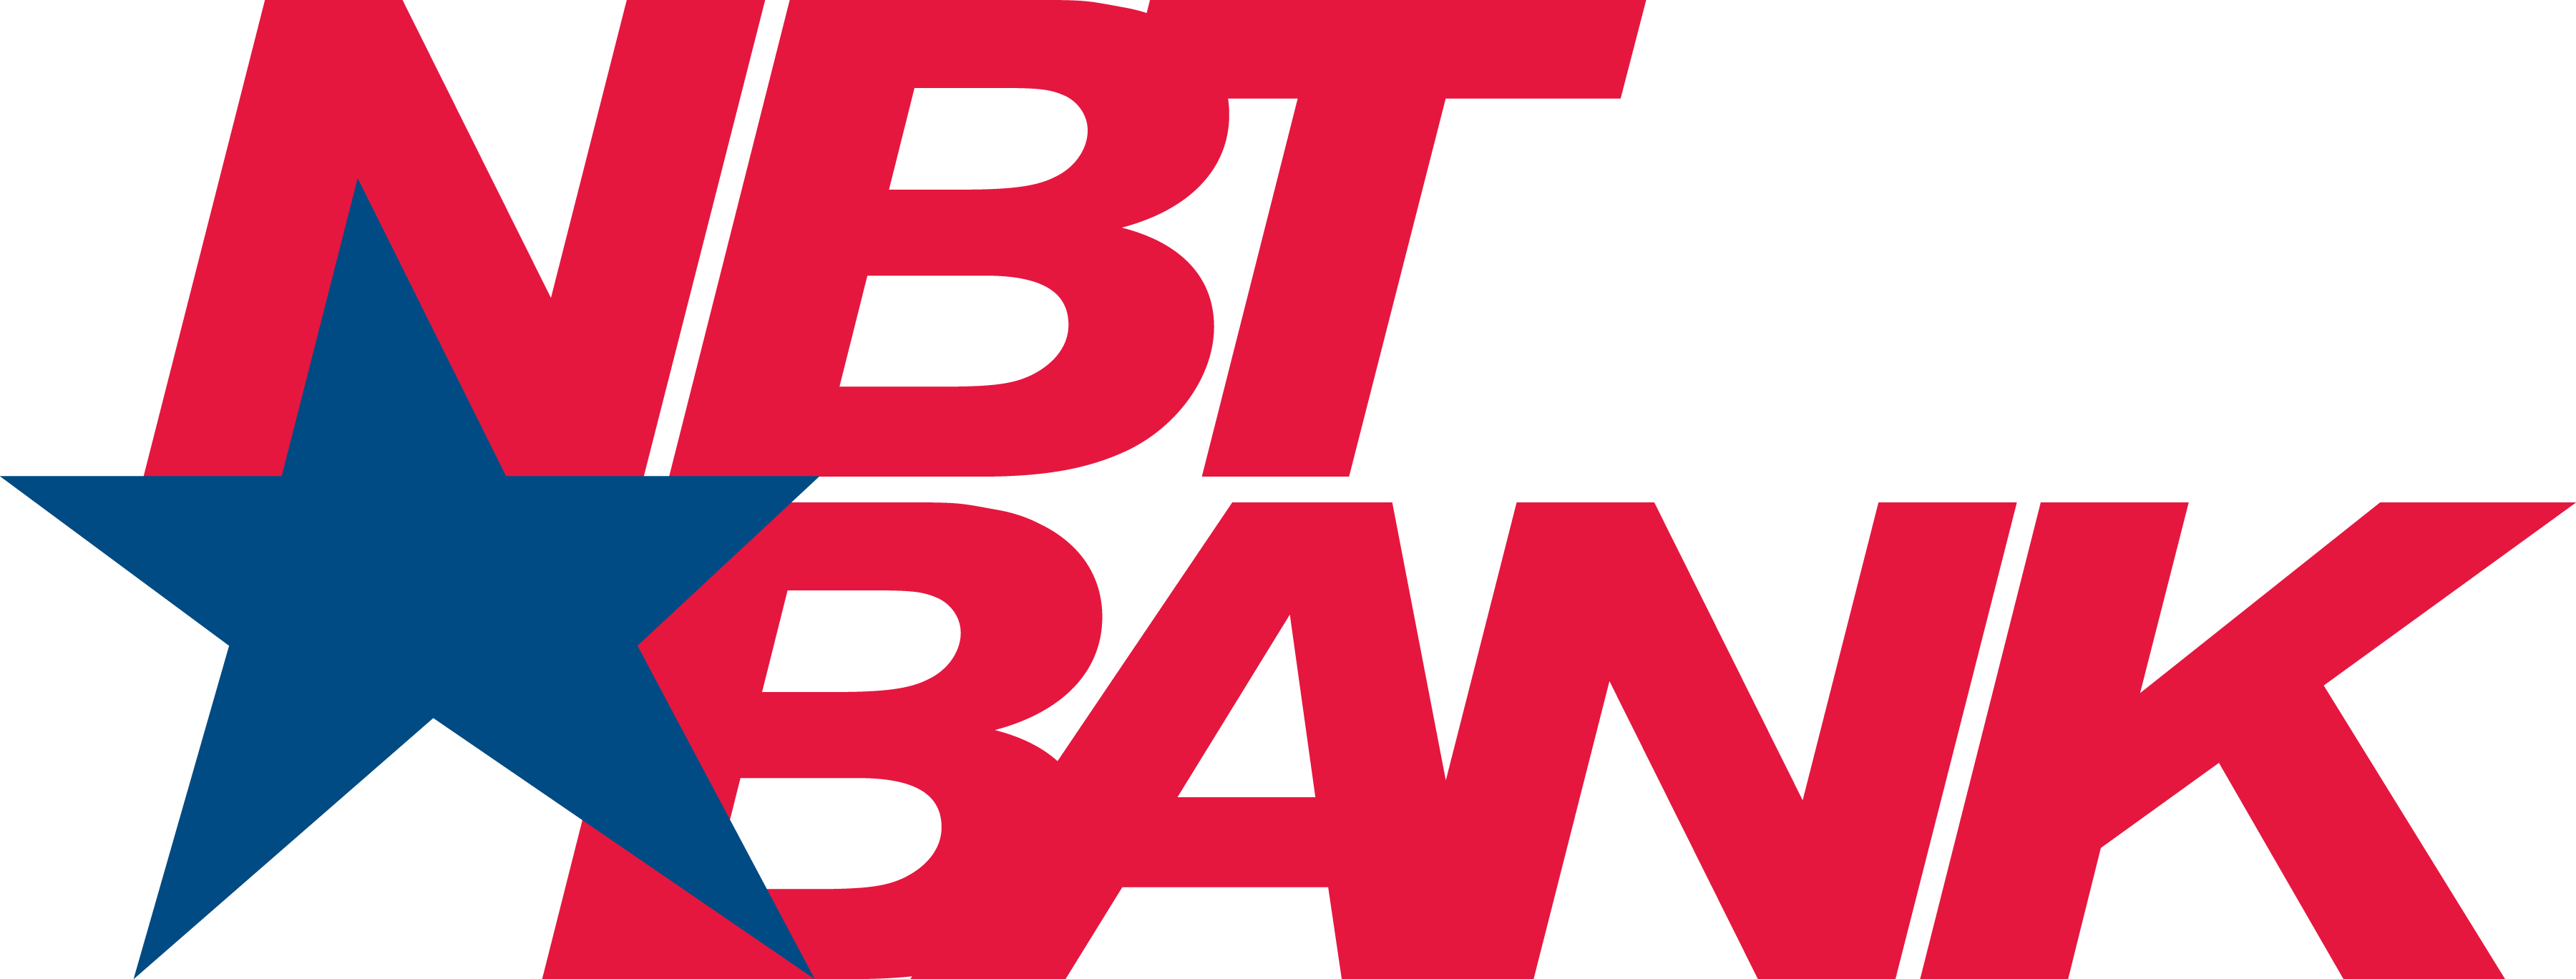 NBT bank logo